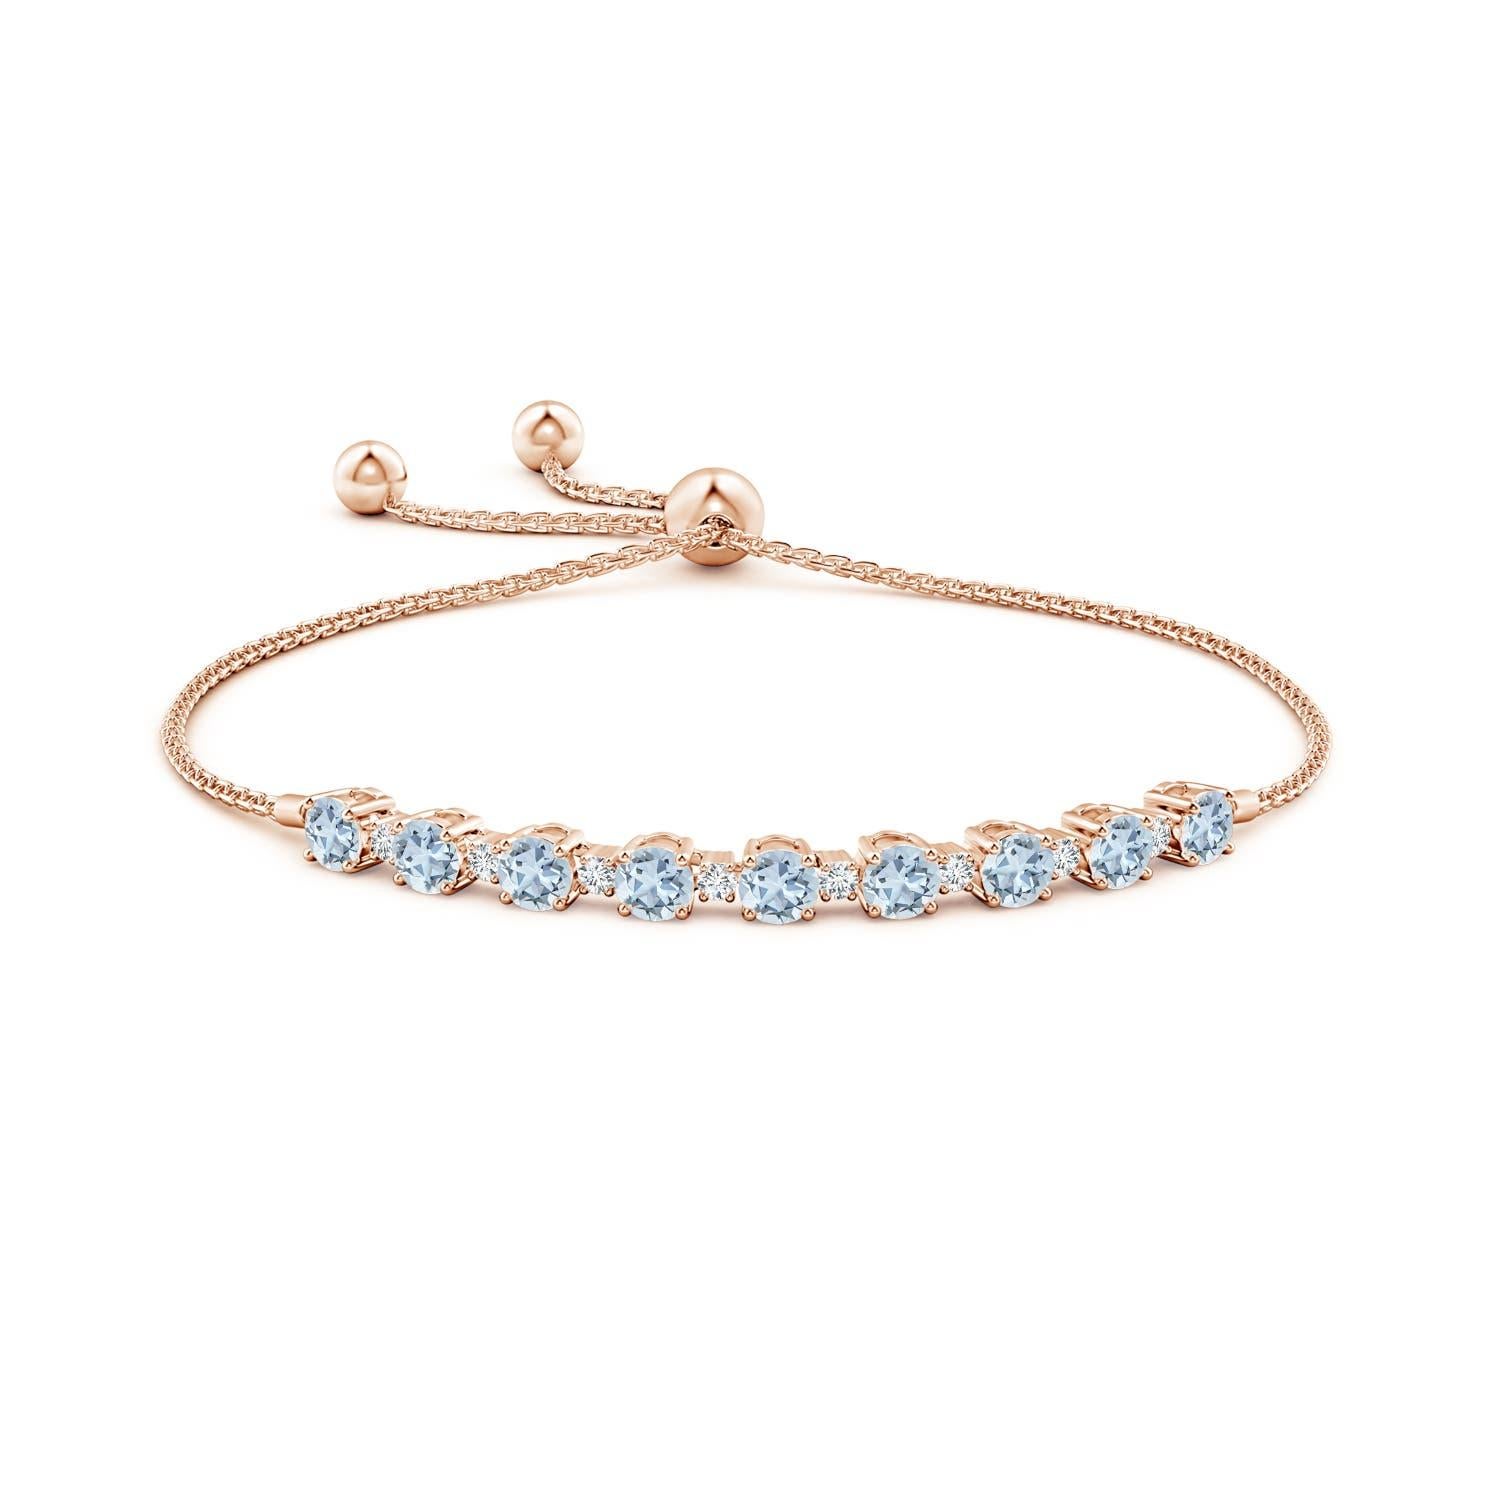 Meeresblaue Aquamarine und glitzernde Diamanten vereinen sich auf diesem Tennis-Bolo-Armband aus 14 Karat Roségold. Sie sind abwechselnd mit Zacken besetzt und sorgen für einen klassischen Look. Dieses Armband ist verstellbar und passt den meisten